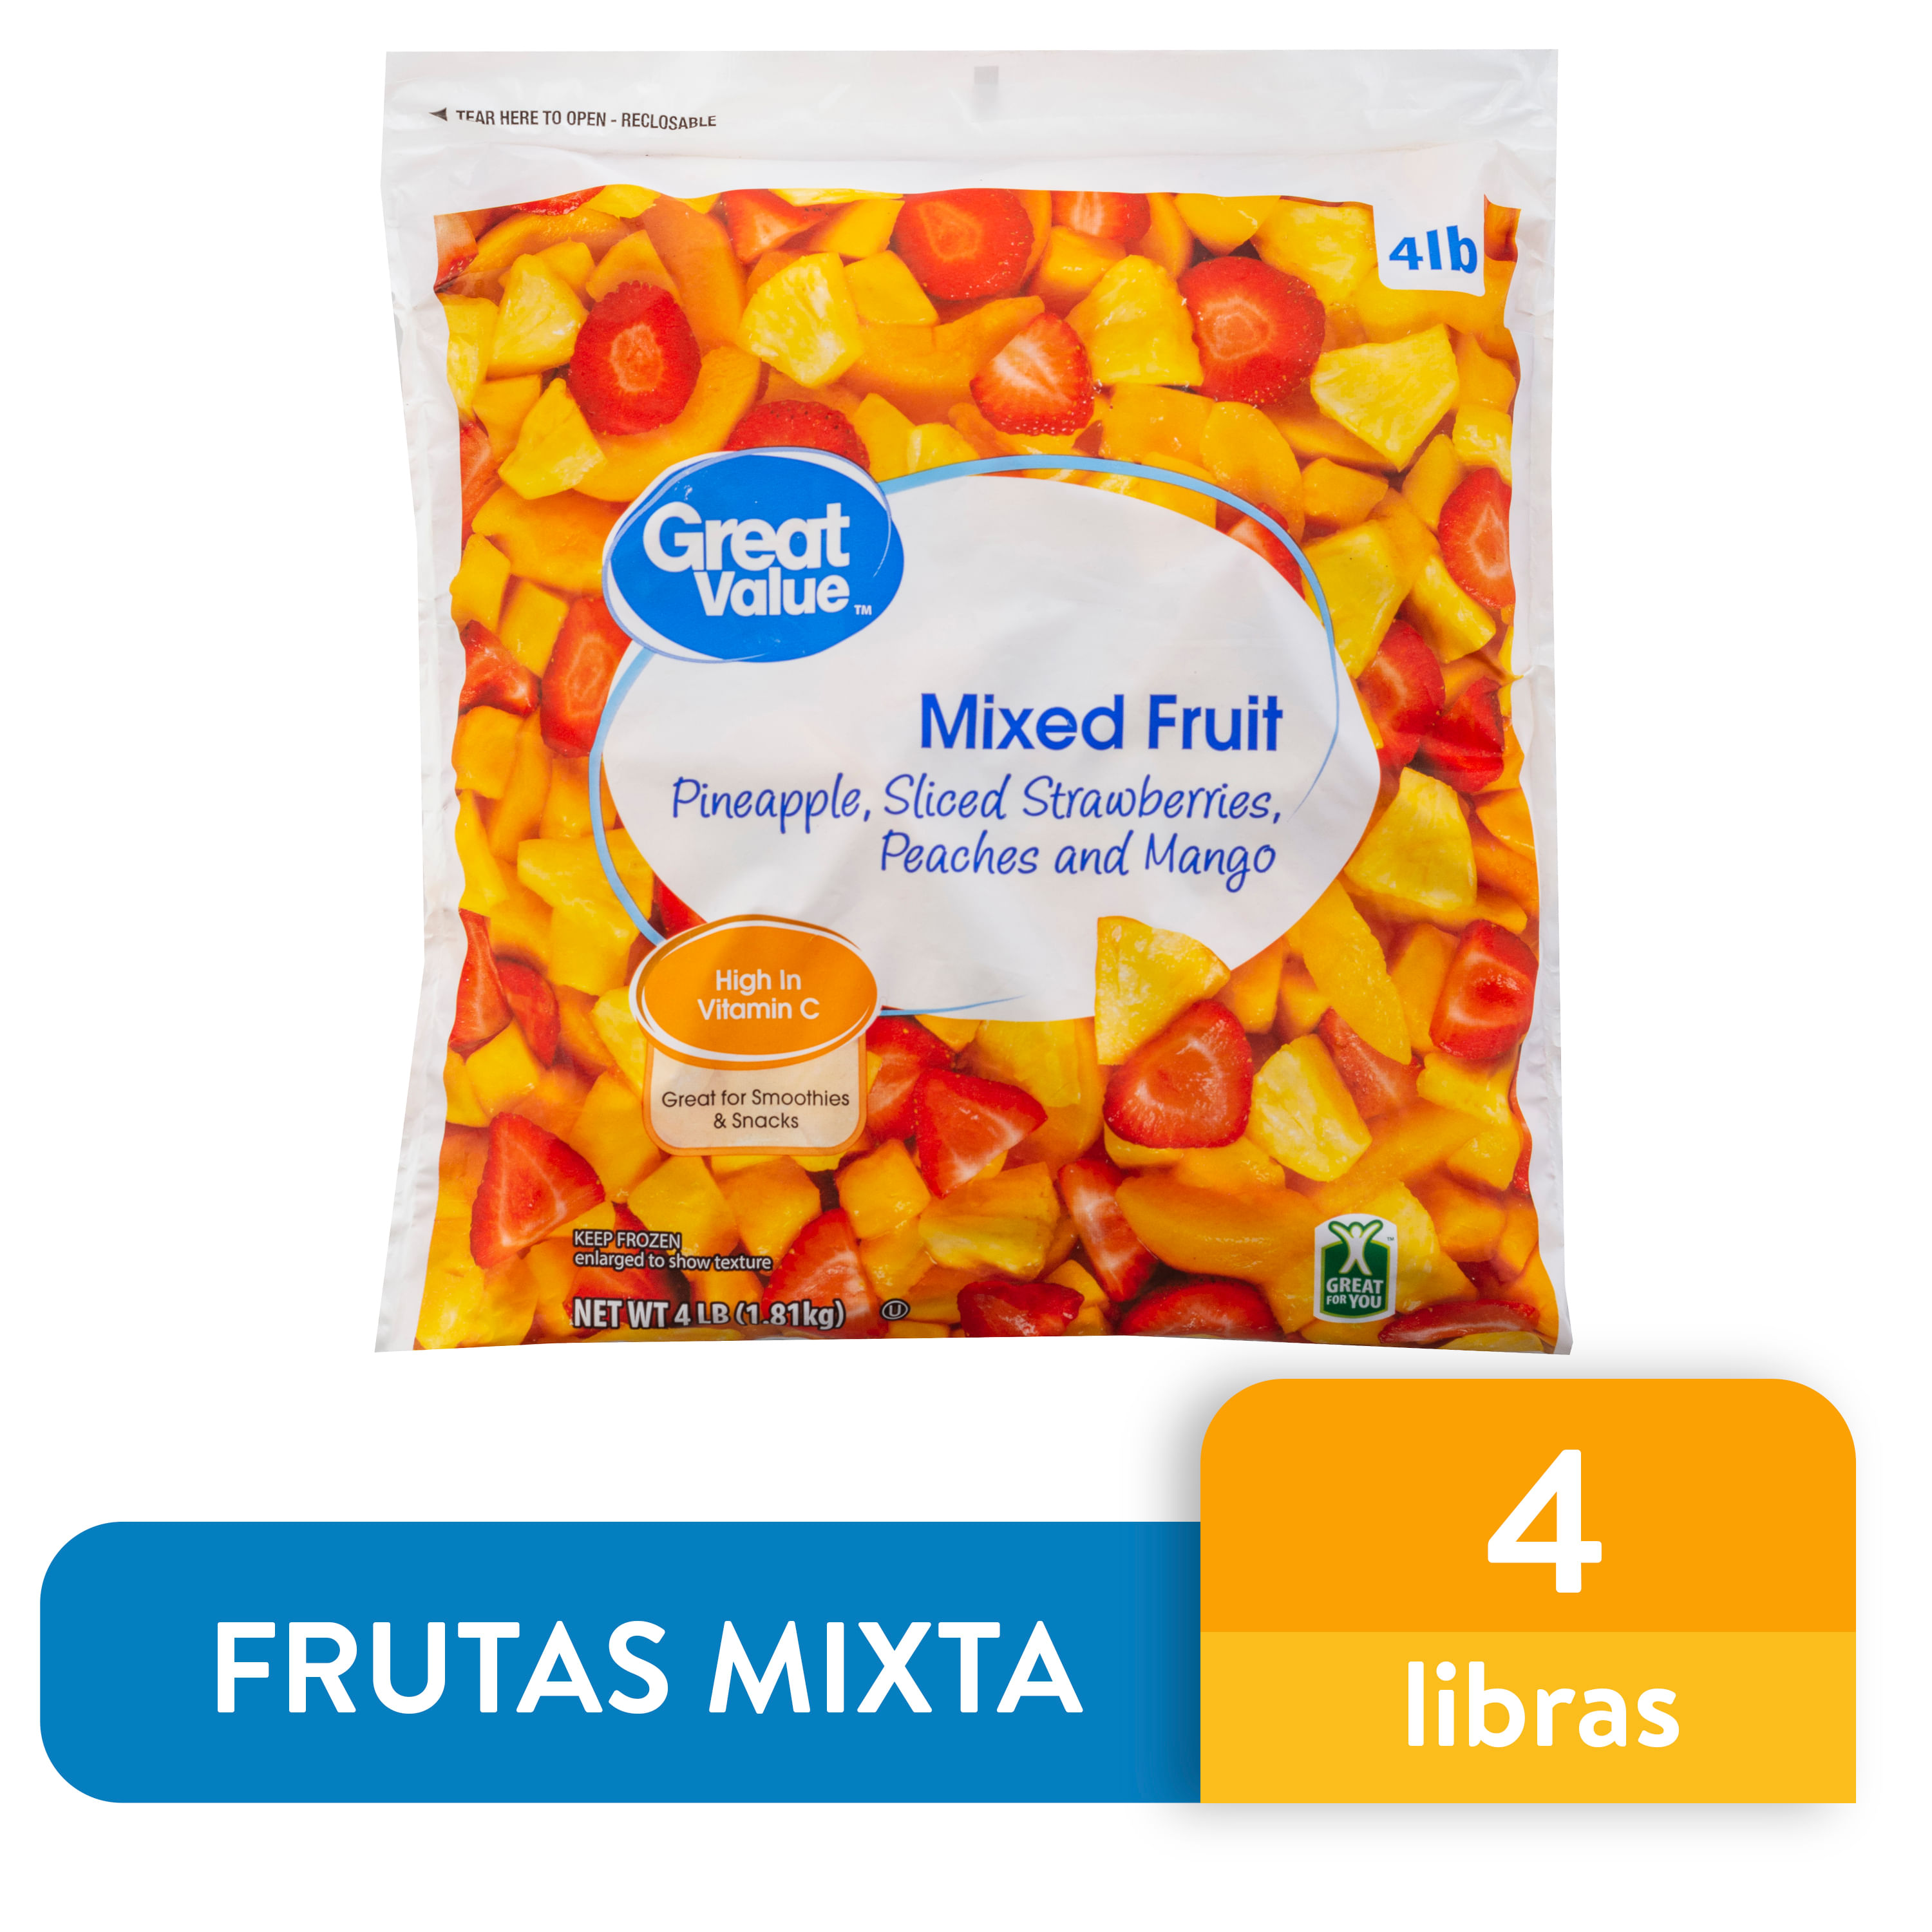 Fruta-Mixta-Great-Value-Congelada-1814gr-1-34896